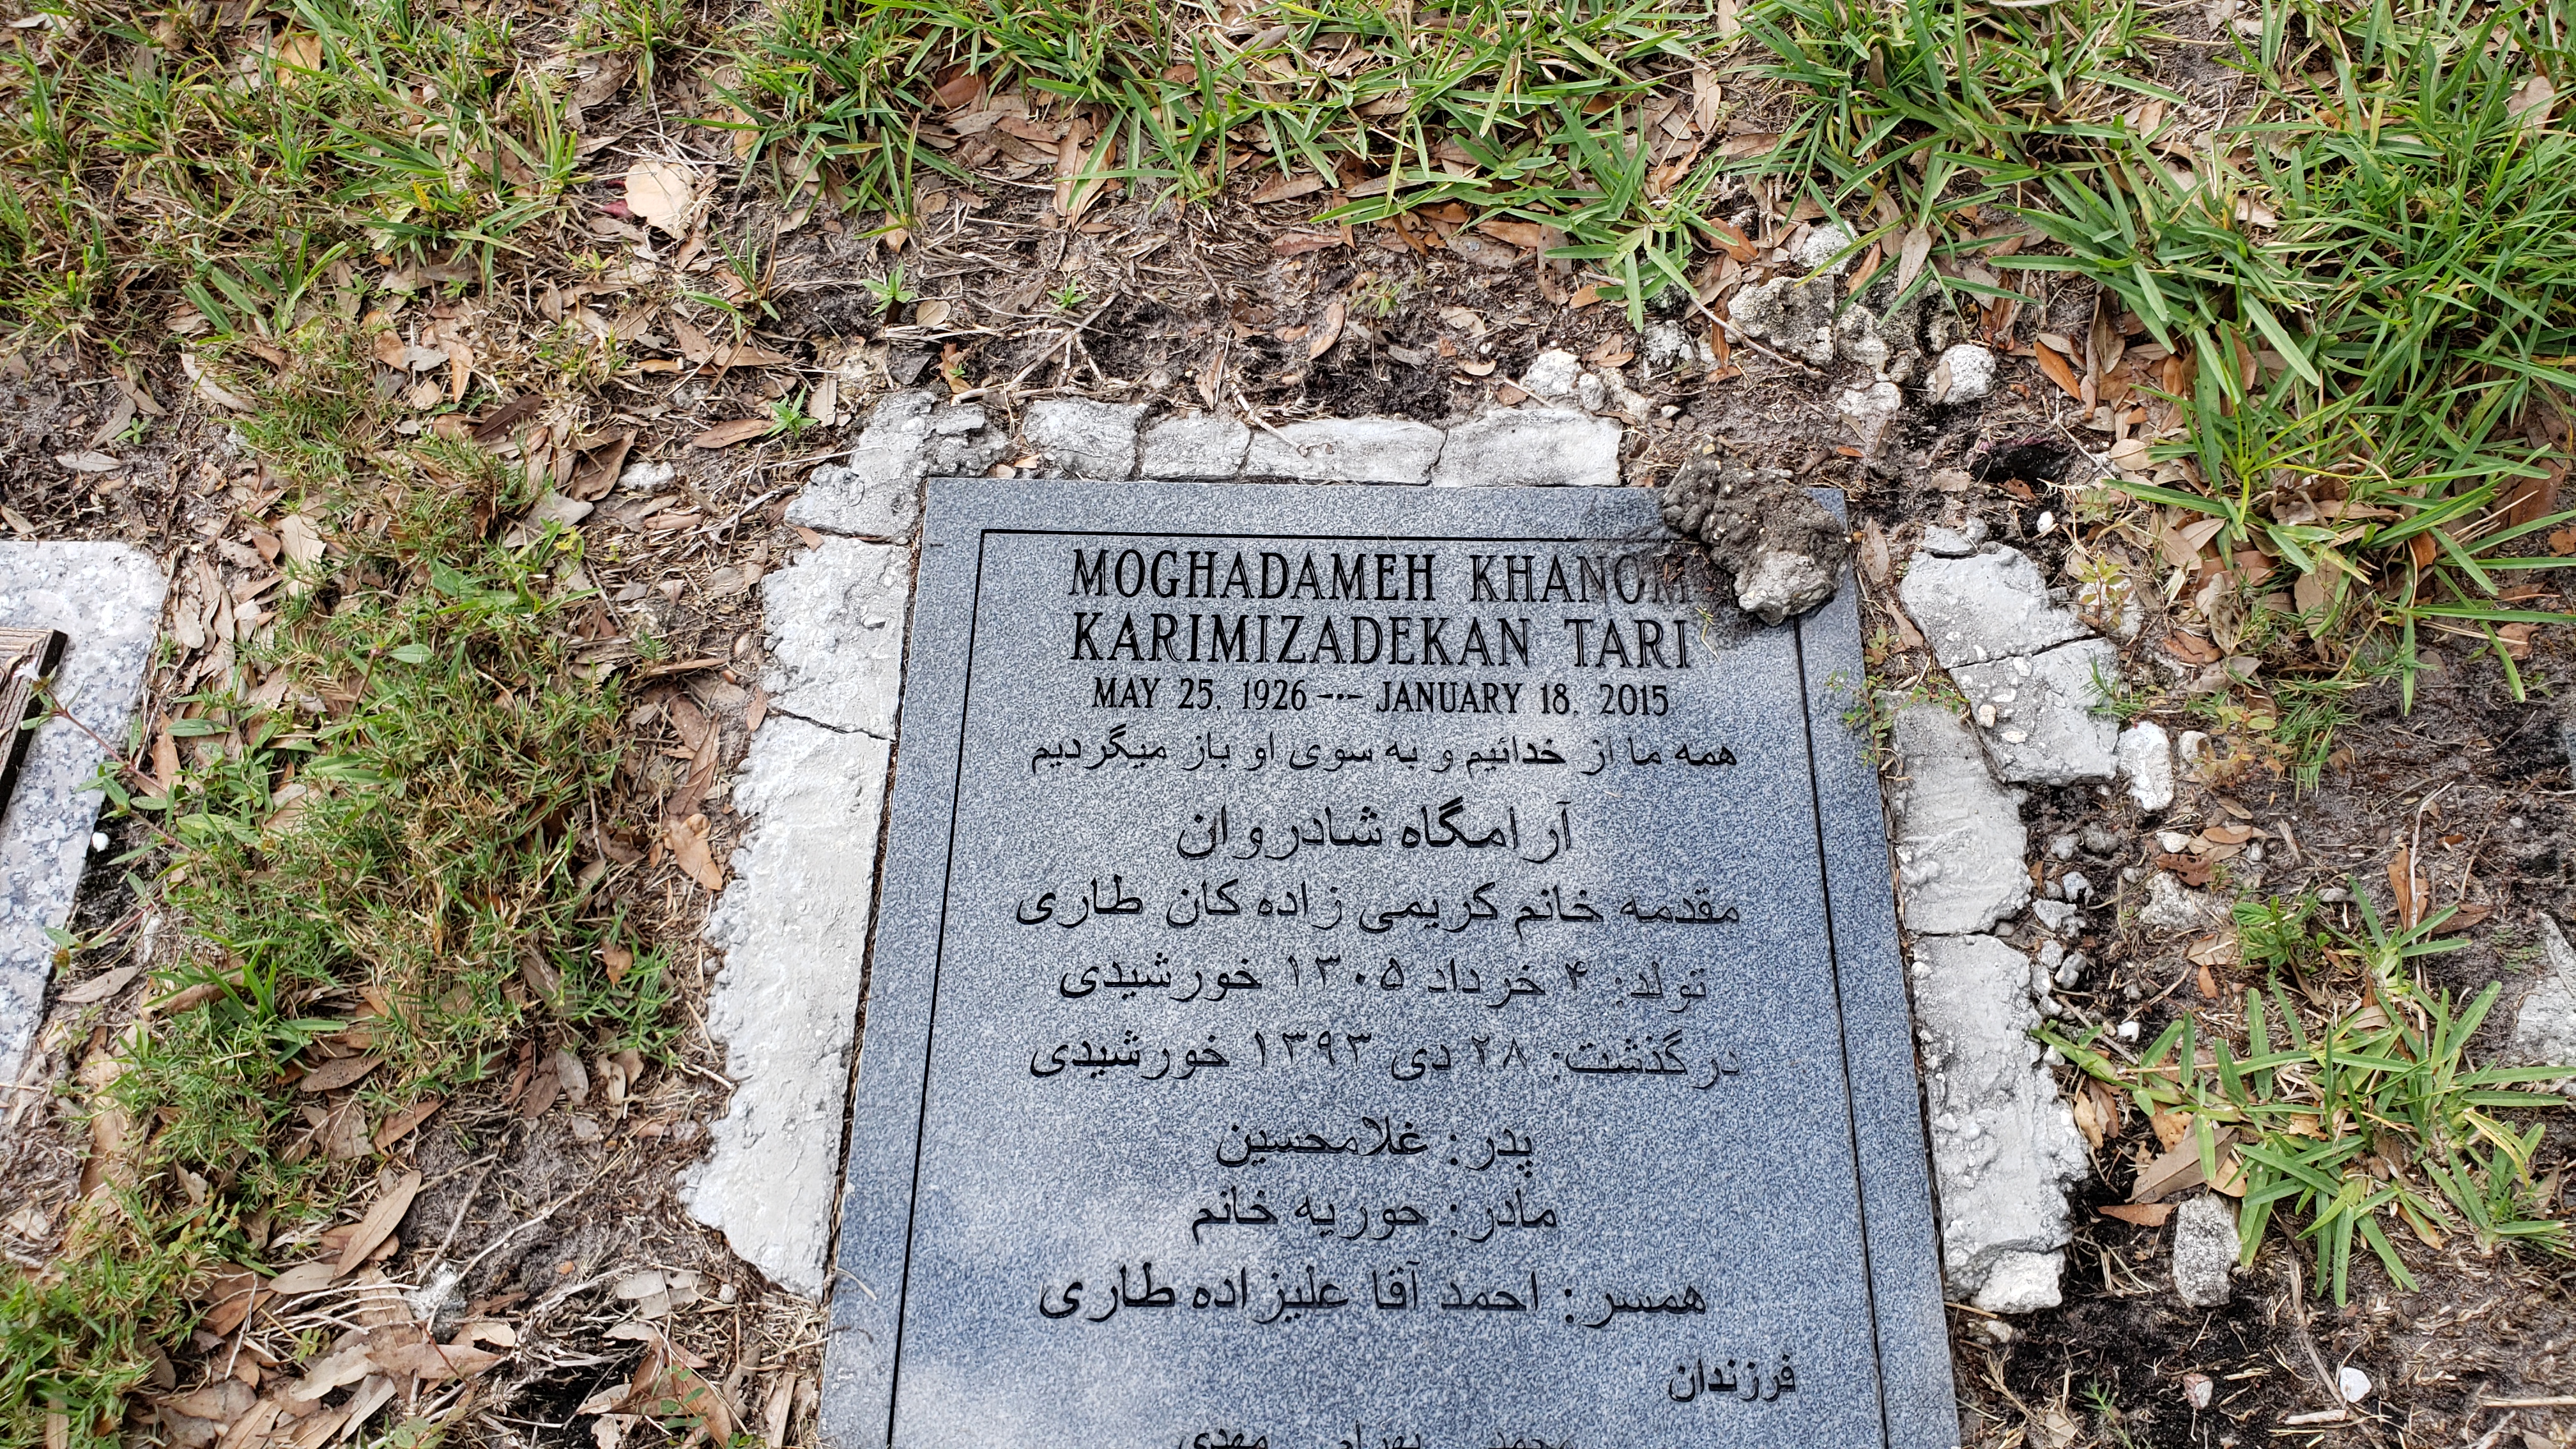 Moghadameh Khanom Karimizadekan Tari